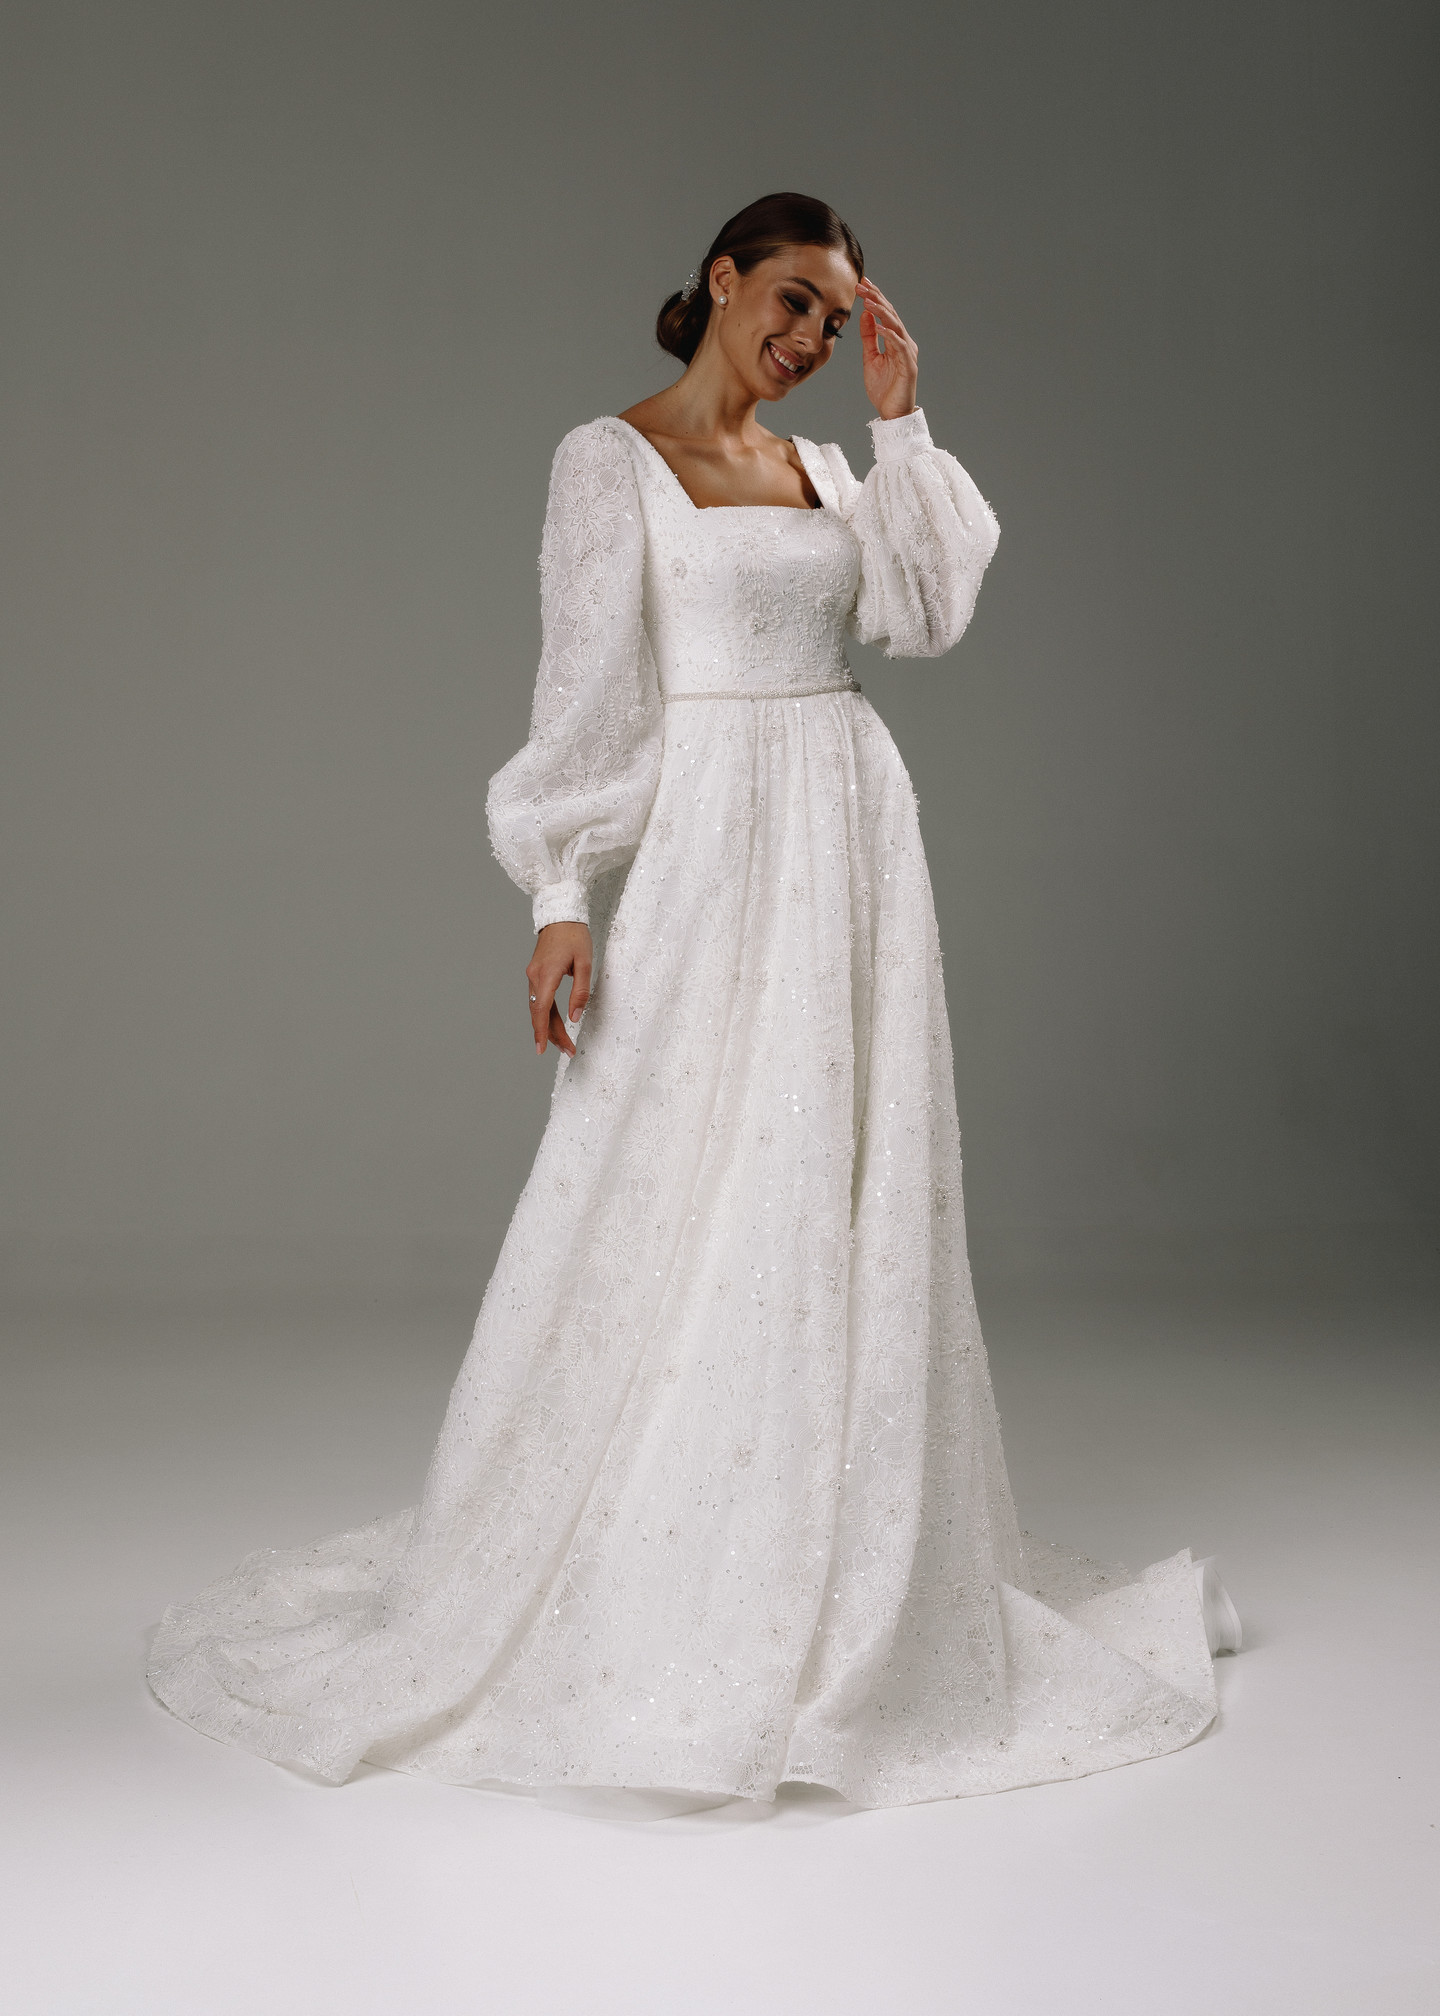 Платье Бьянка, 2020, одежда, платье, свадебное, молочно-белый, кружево, А-силуэт, вышивка, рукава, шлейф